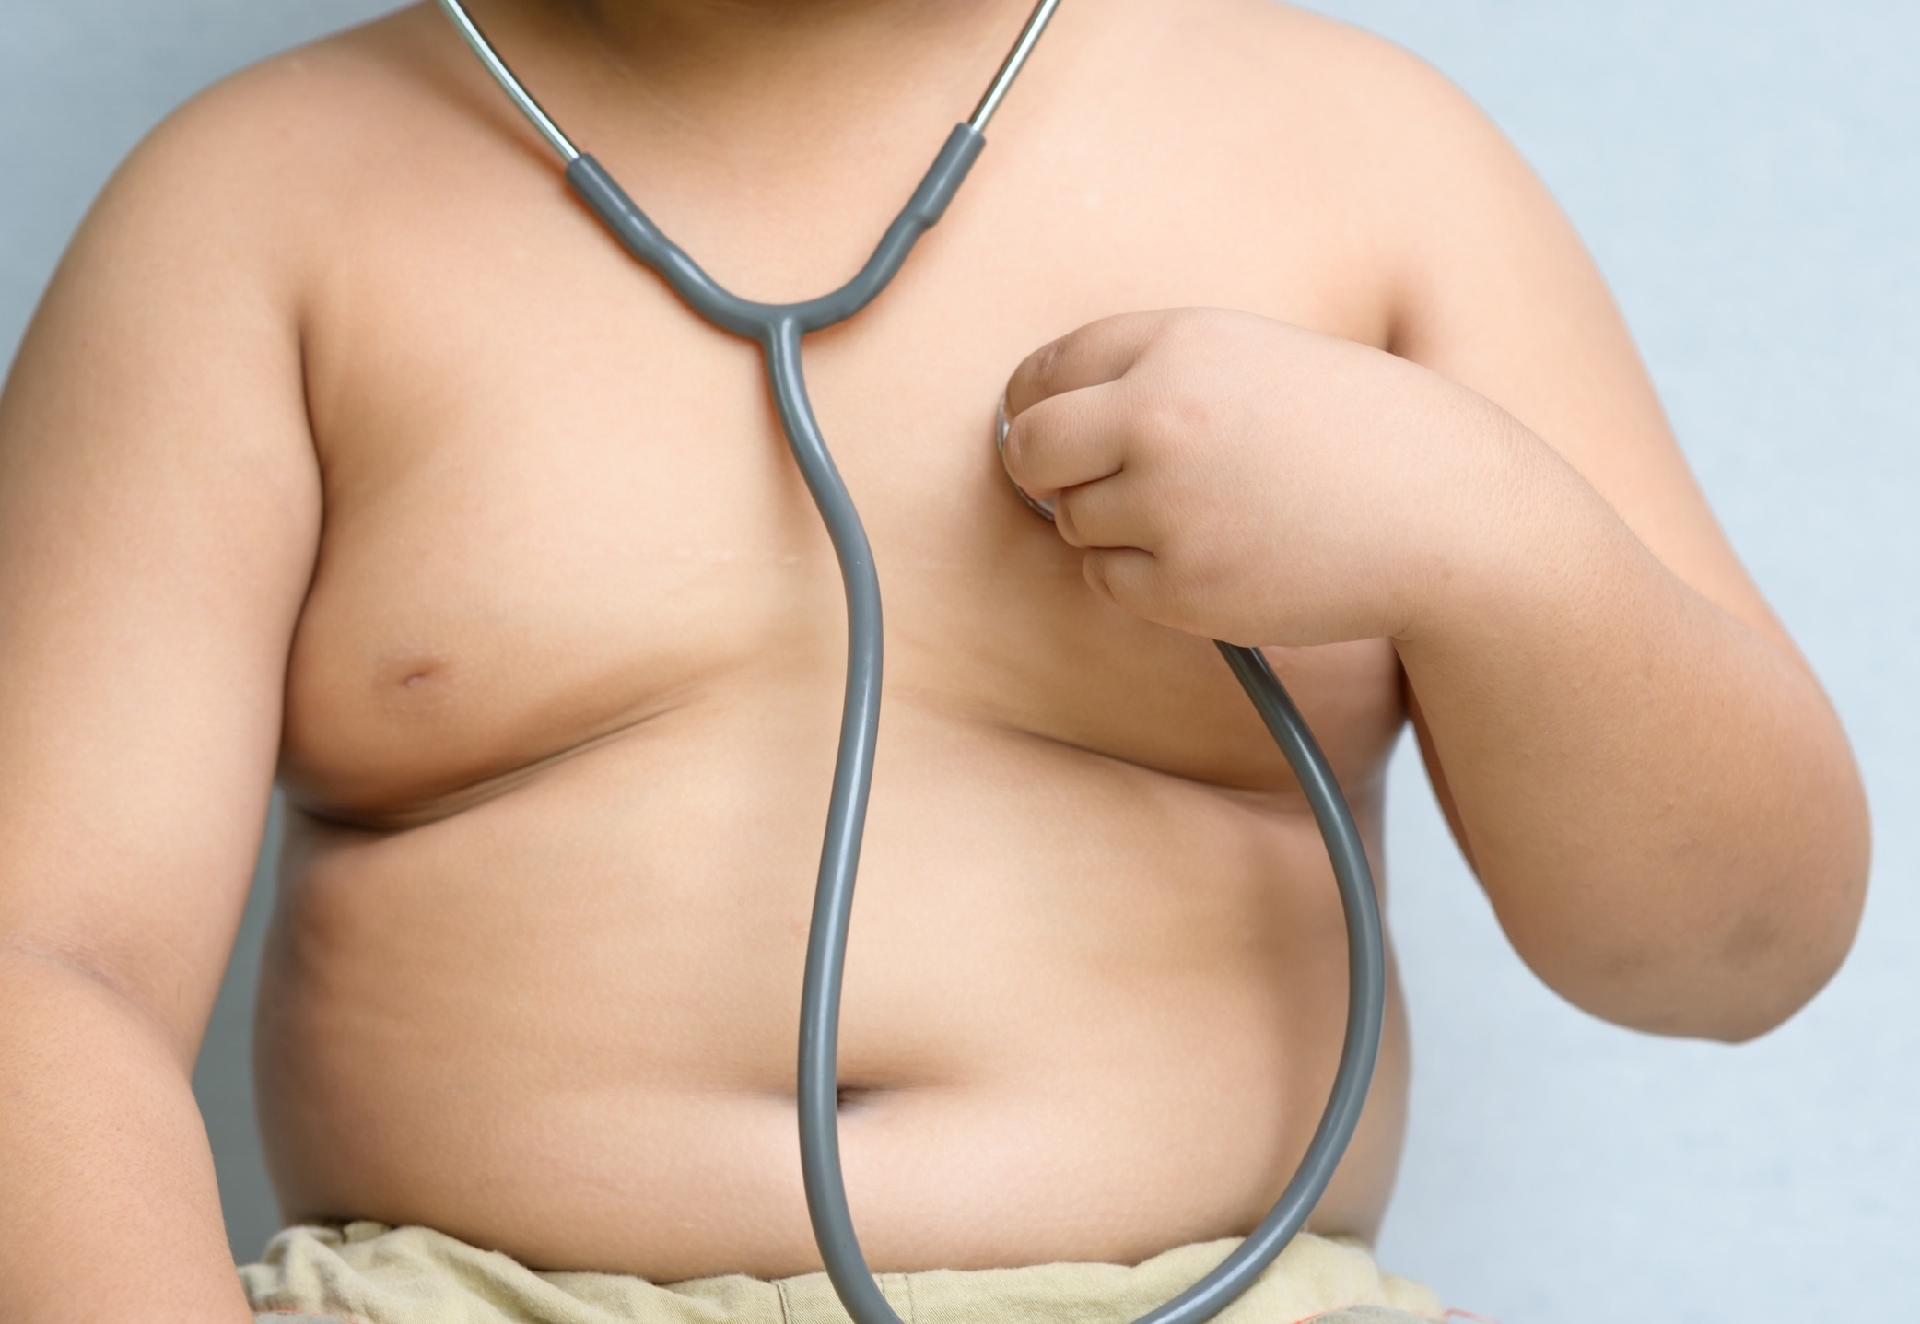 Obesidade infantil: quais os melhores exercícios para combater?